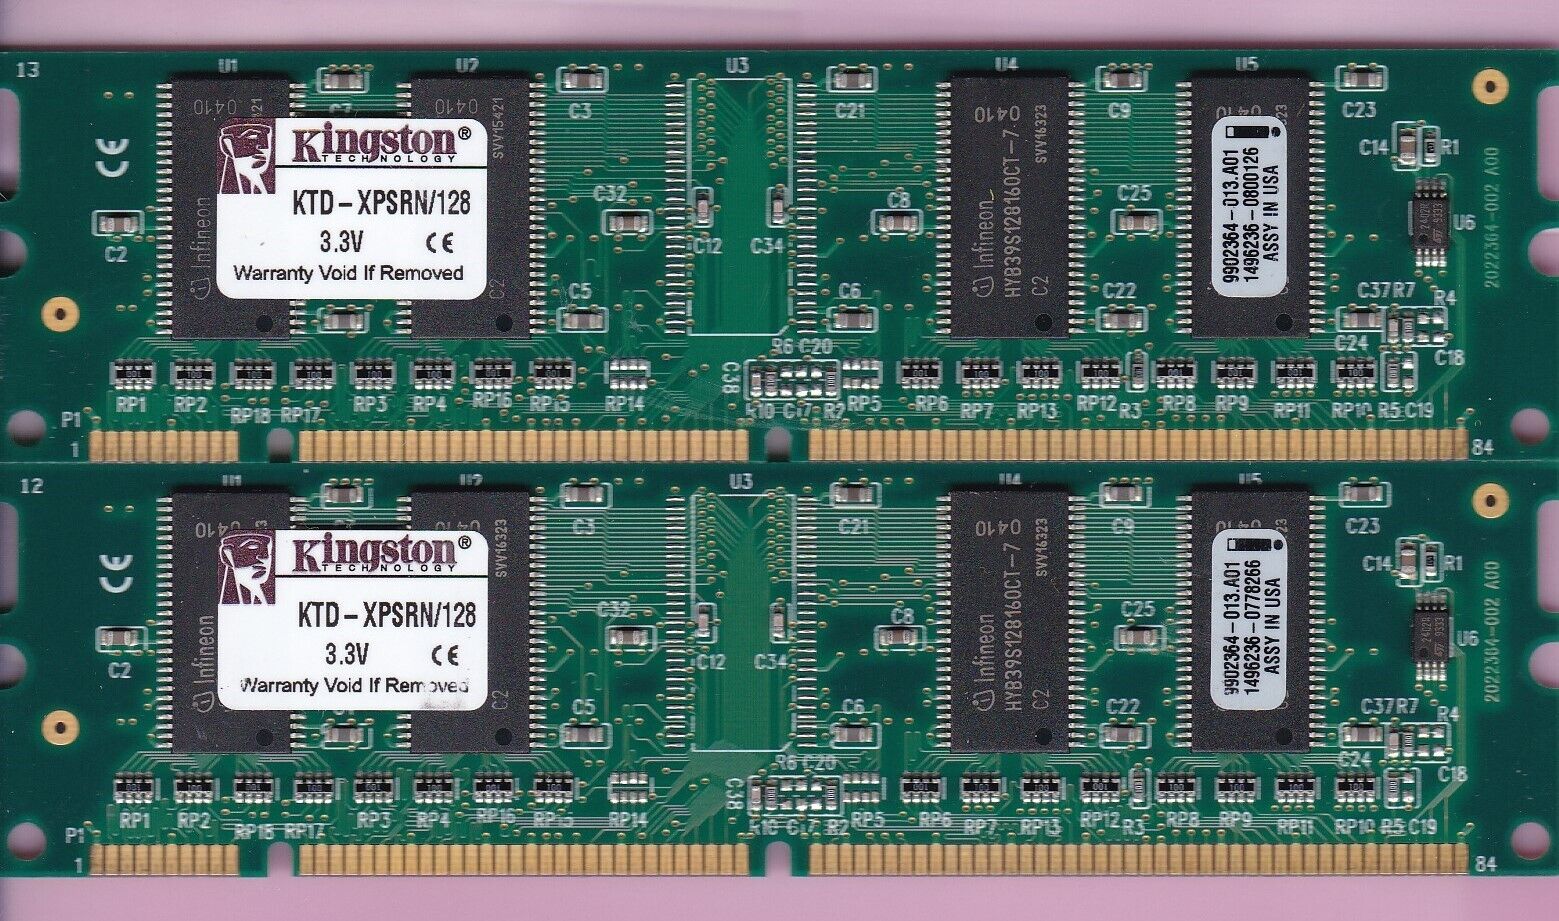 256MB 2x128MB PC-100 Kingston KTD-XPSRN/128 INFINEON PC100 SDRAM SDR Memory Kit